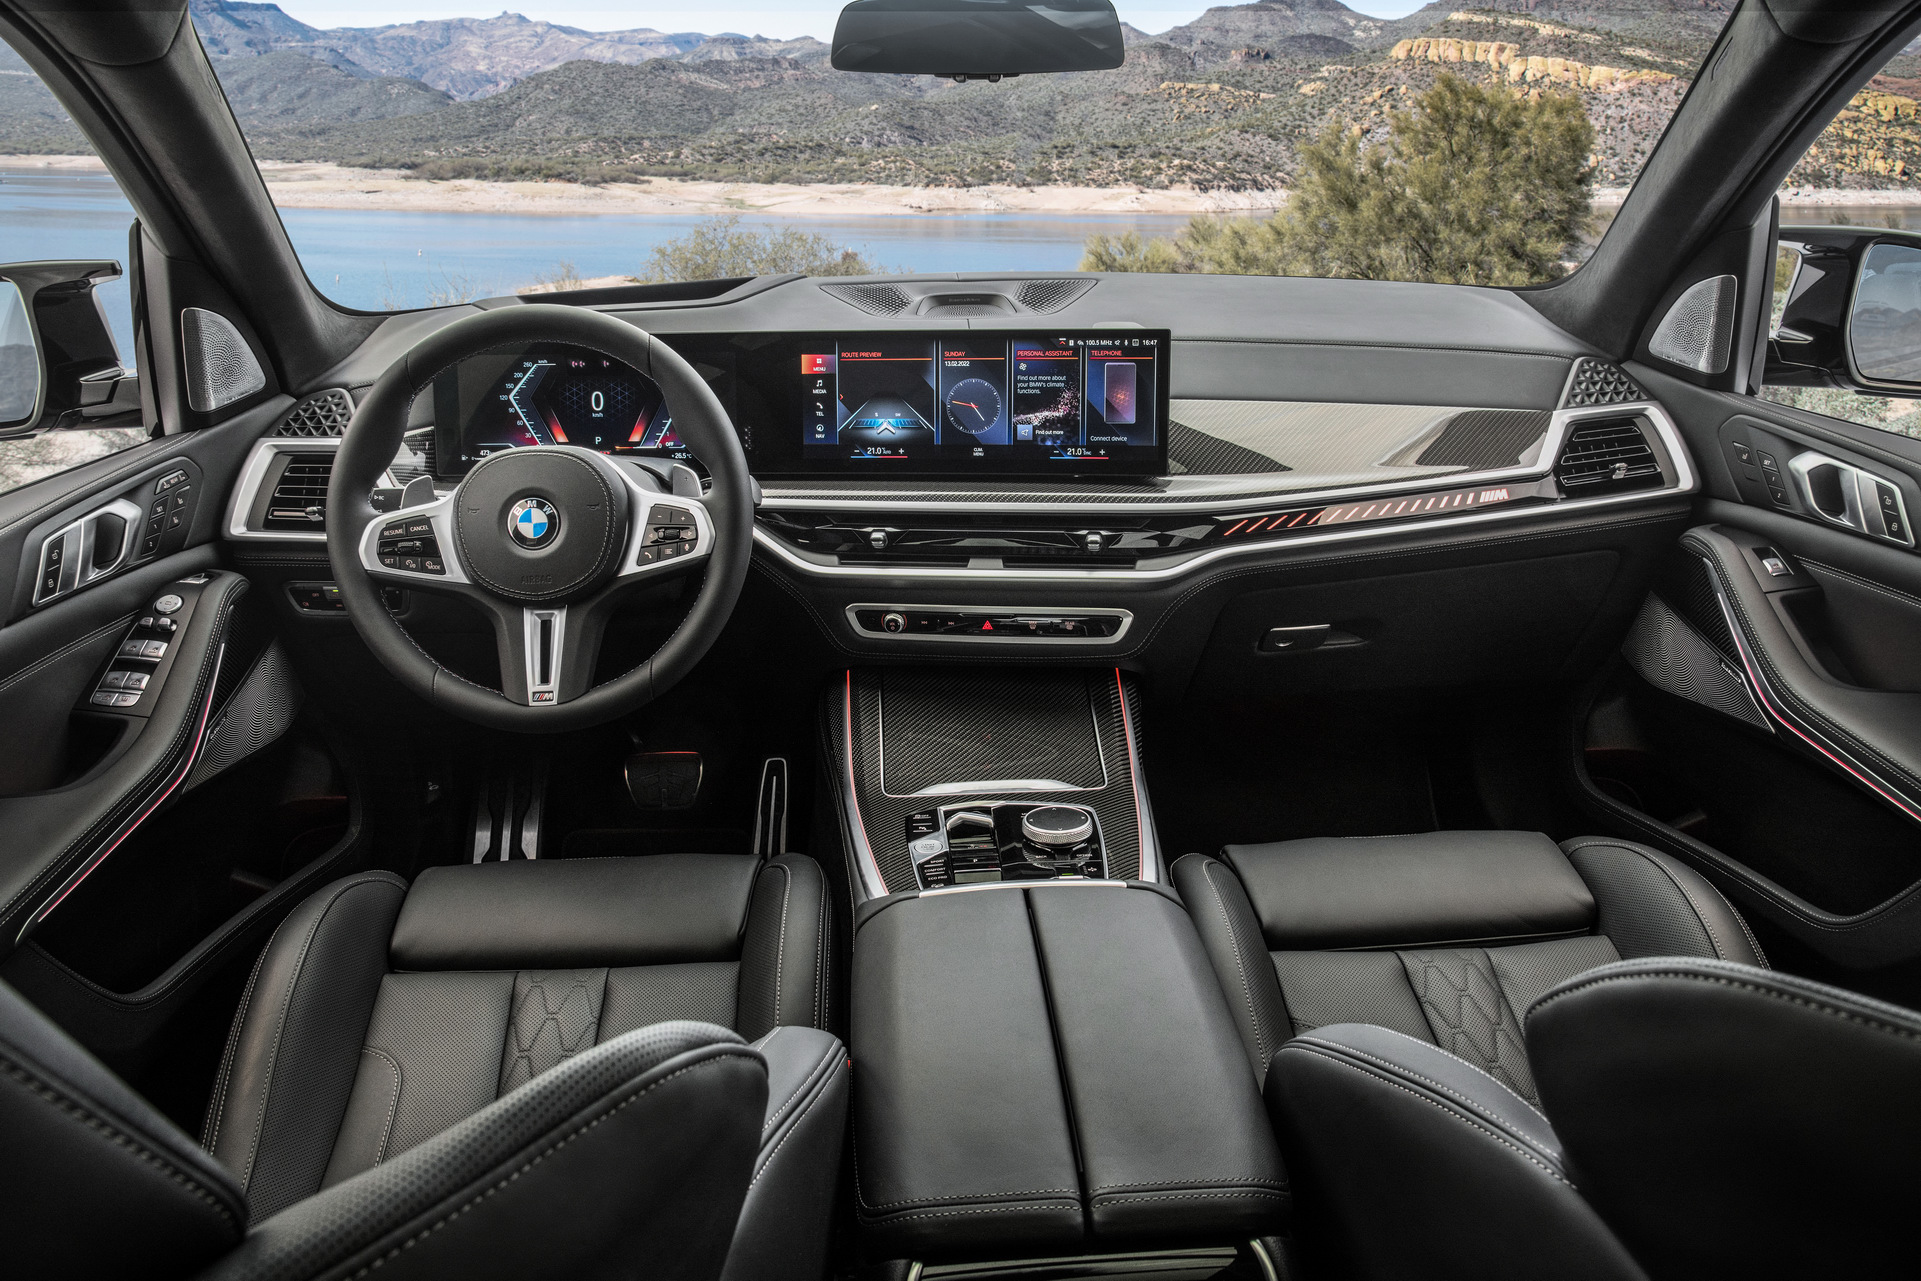 Yeni BMW X7 SUV tanıtıldı: İşte tasarımı ve özellikleri